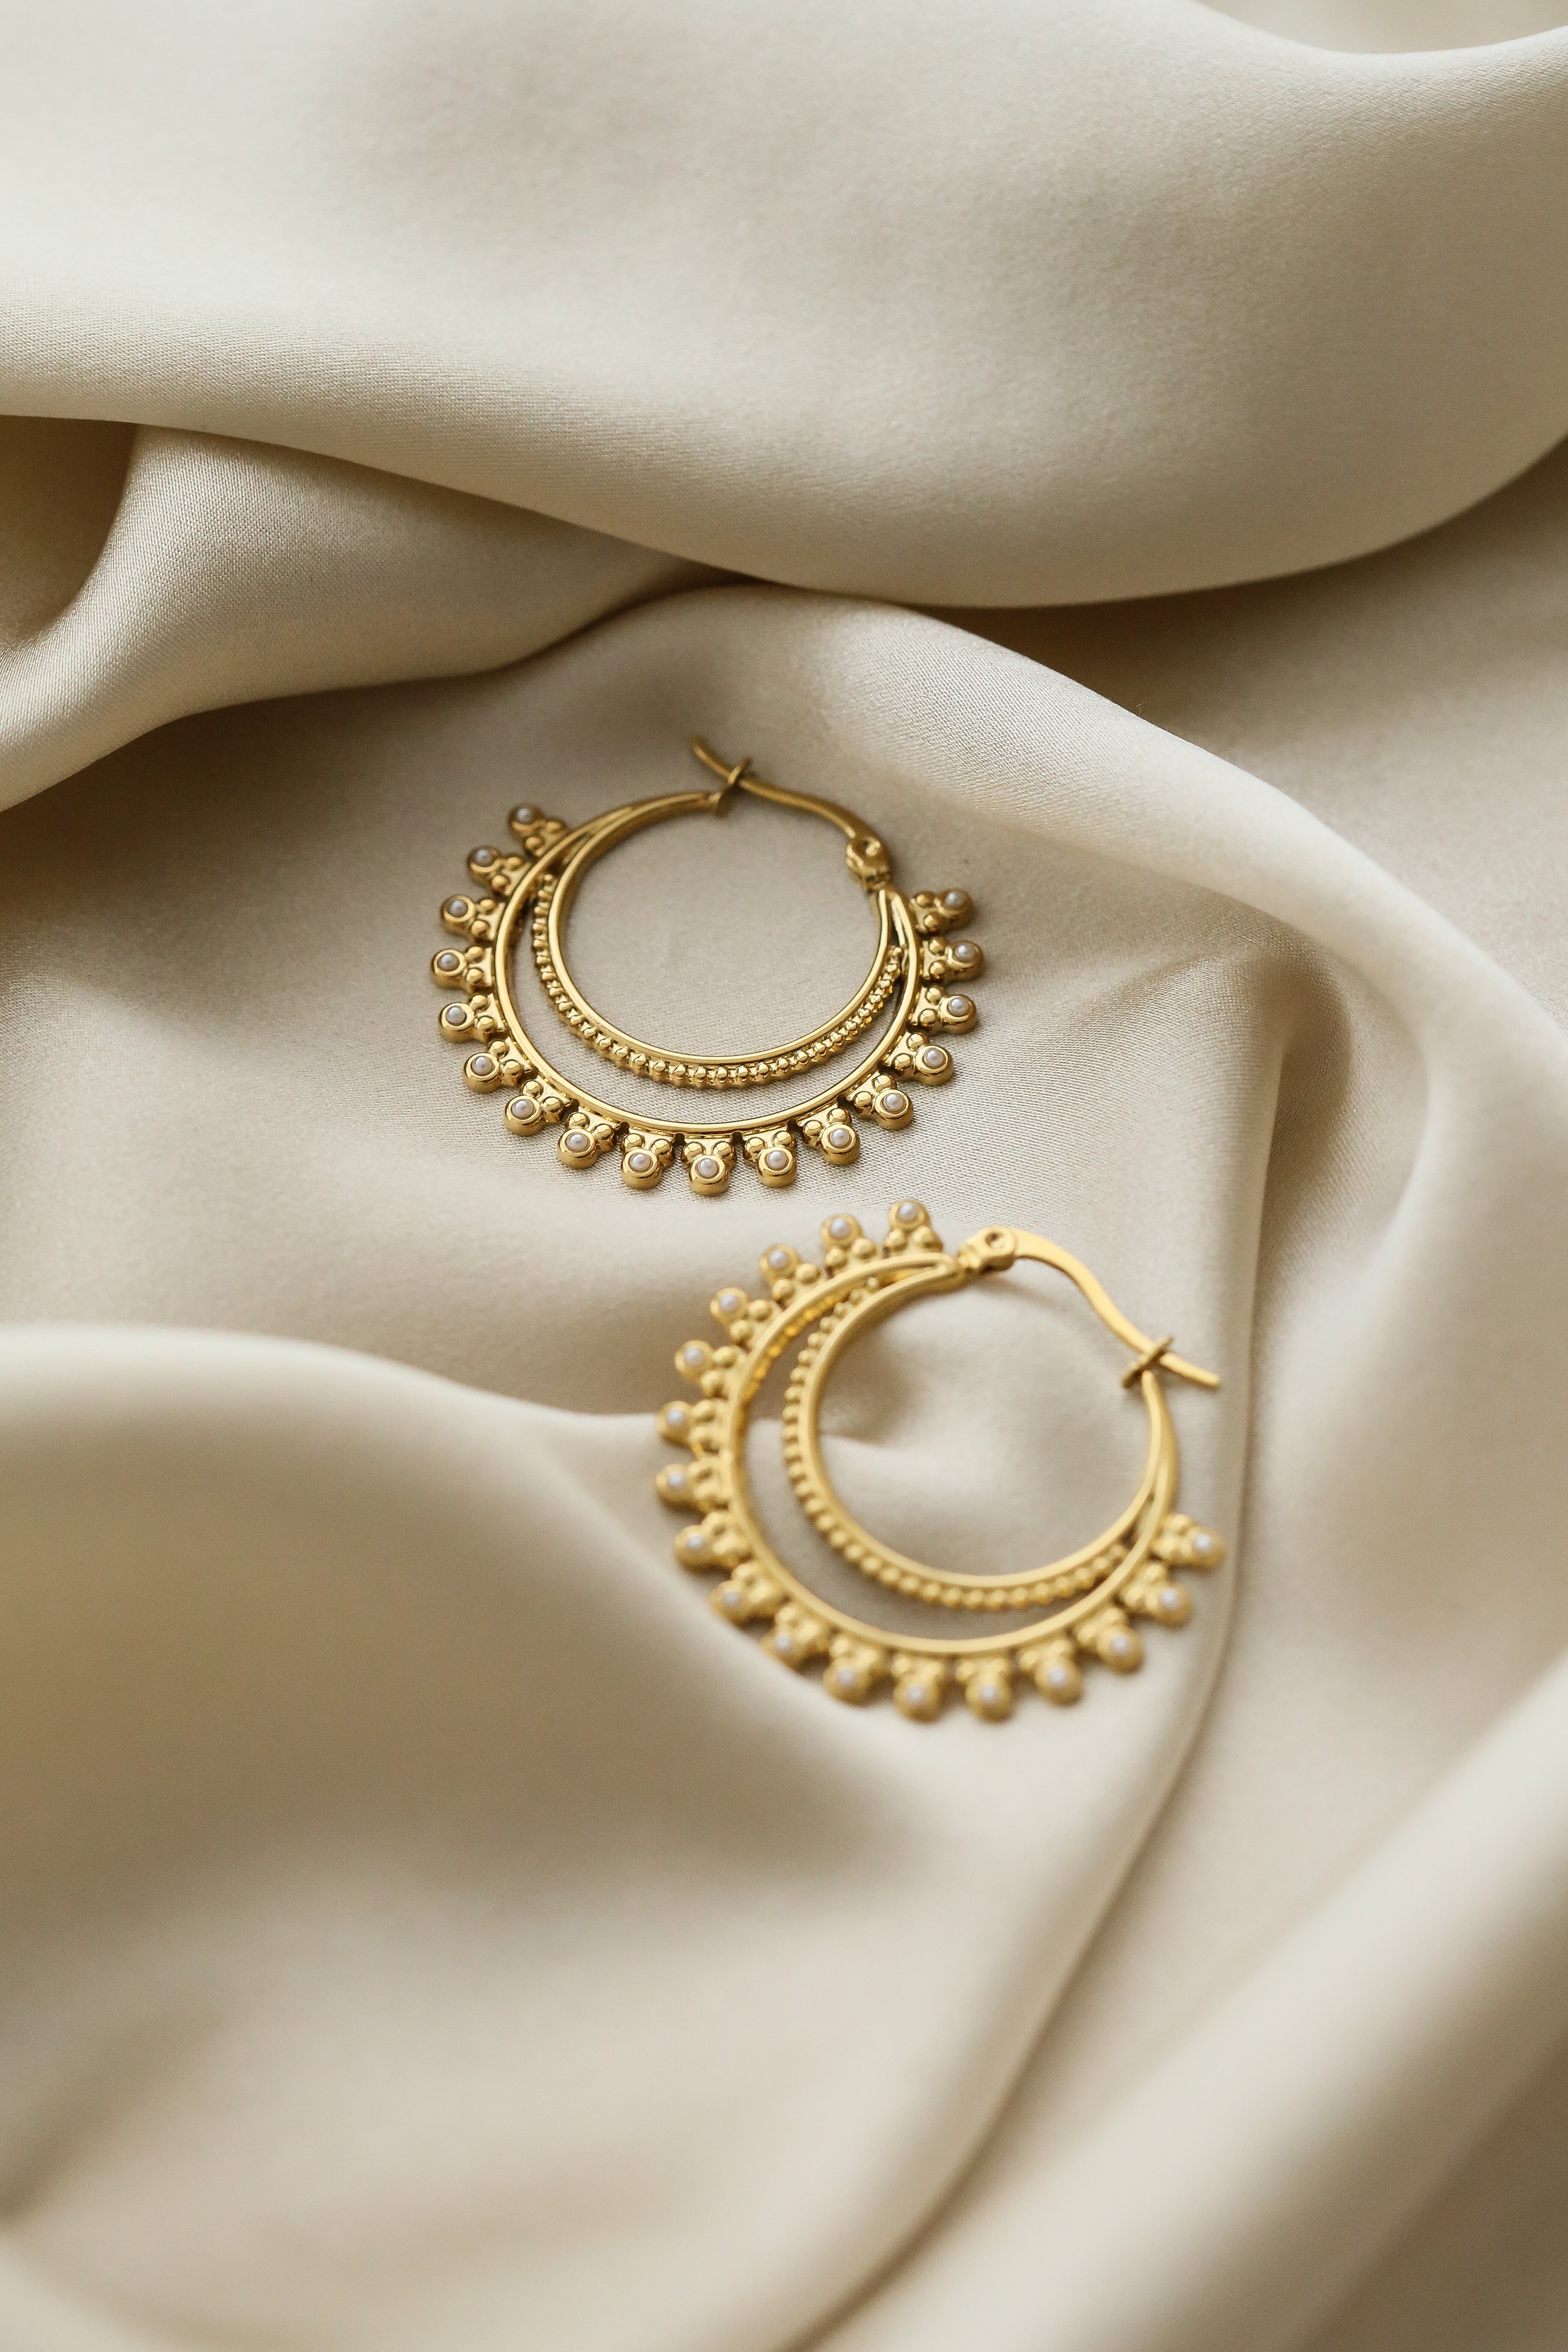 Waya Earrings - Boutique Minimaliste has waterproof, durable, elegant and vintage inspired jewelry